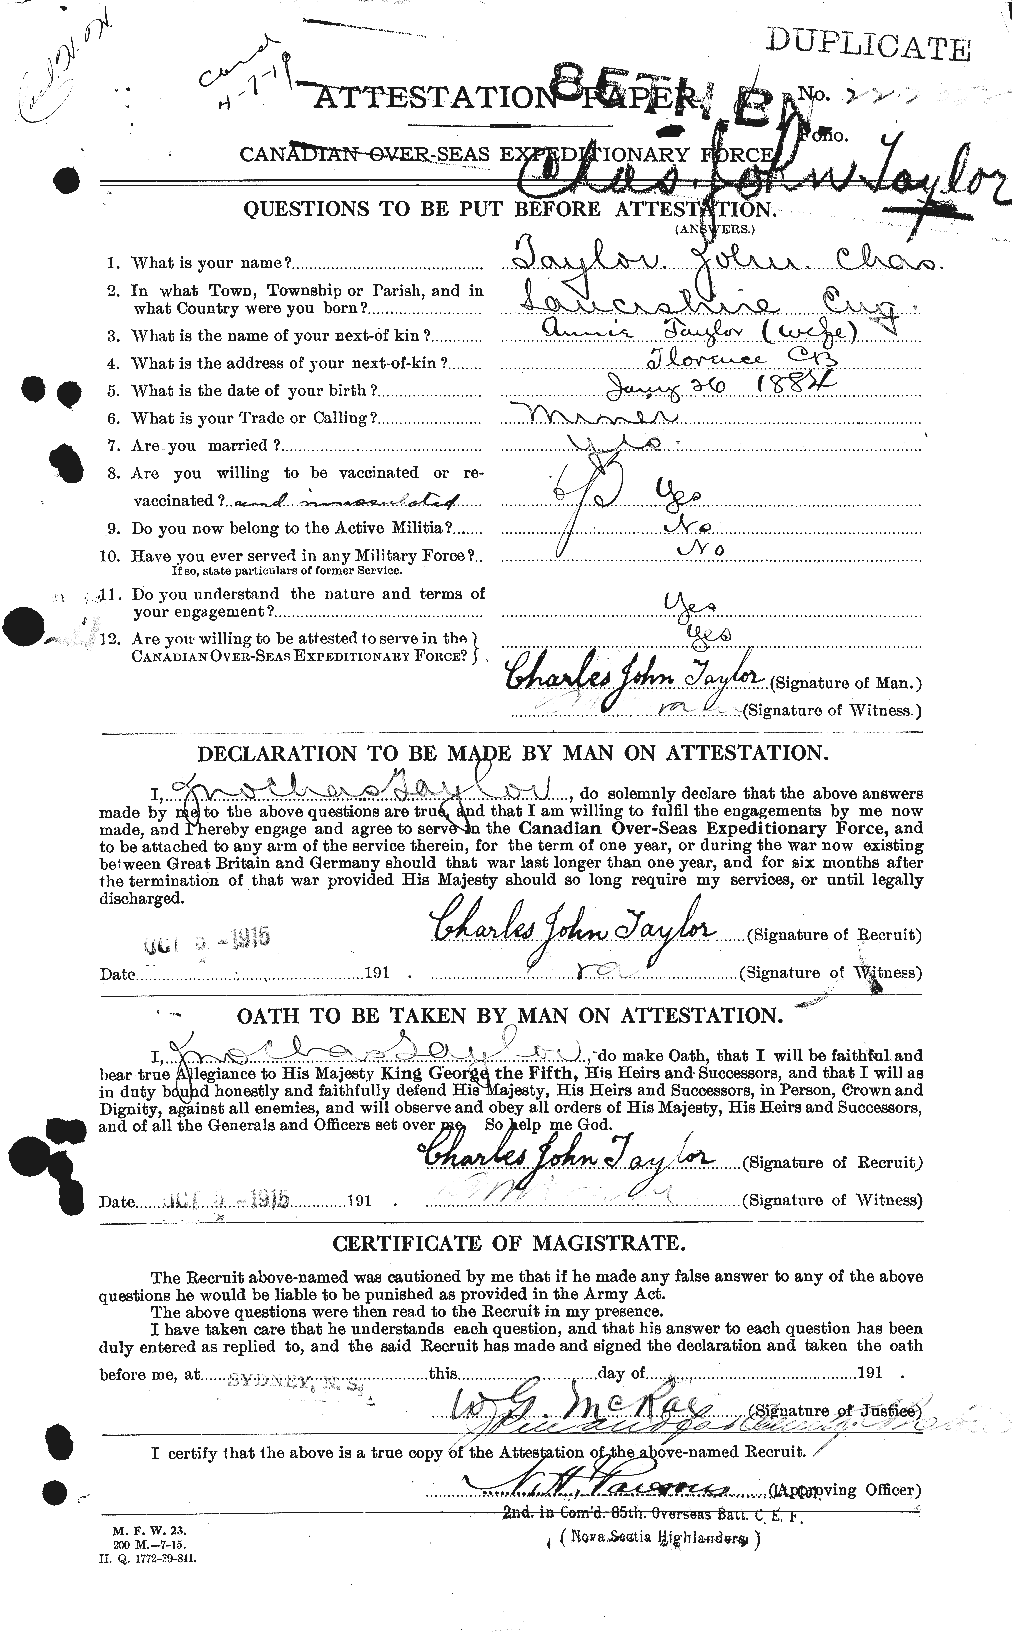 Dossiers du Personnel de la Première Guerre mondiale - CEC 627057a